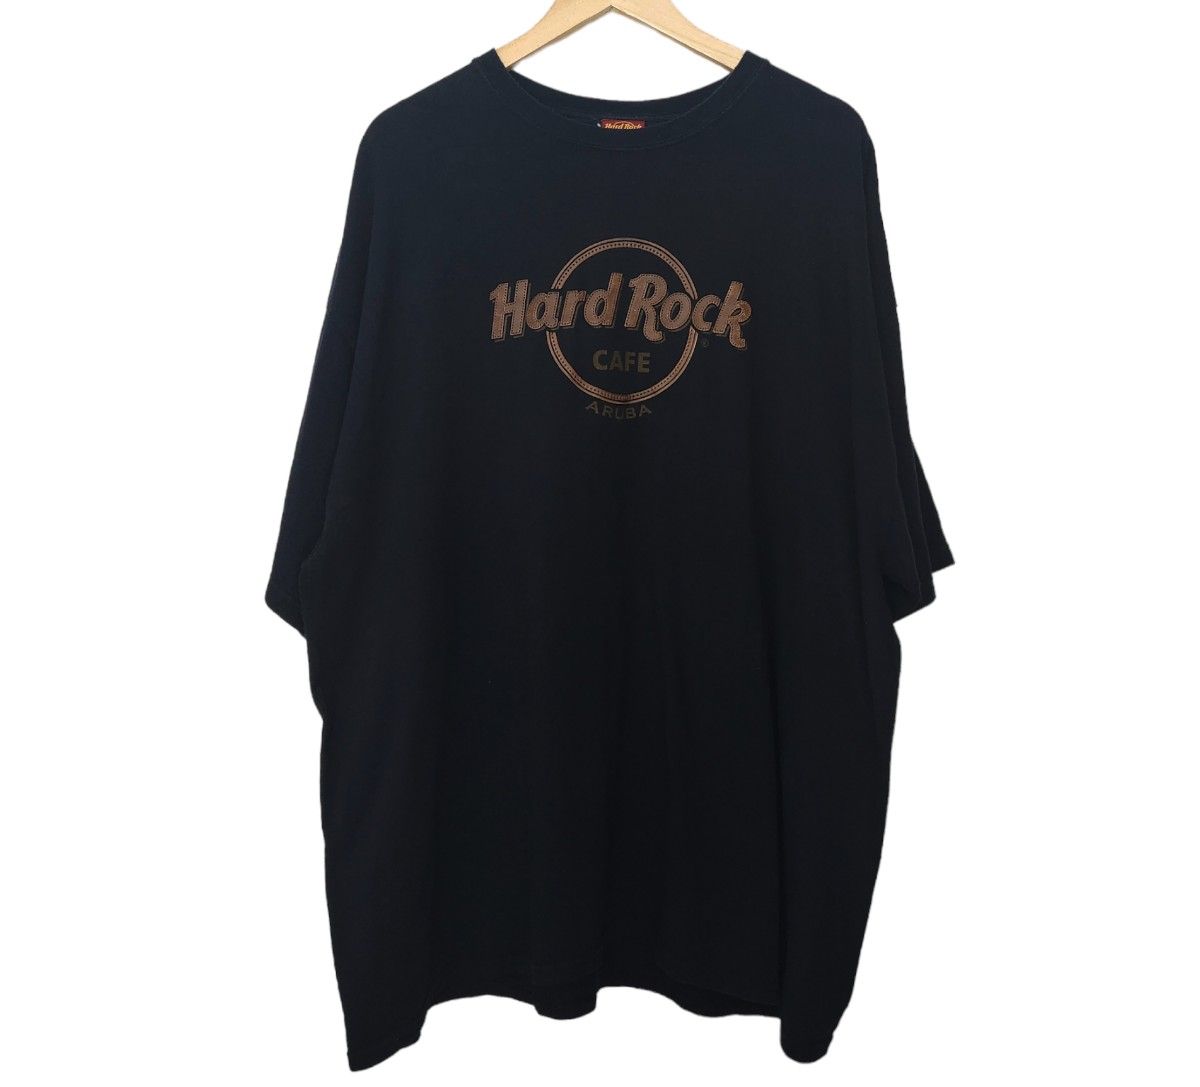 Hard Rock CAFE ハードロックカフェ Tシャツ 古着 レザー調ロゴ ブラック 3XL 大きいサイズ